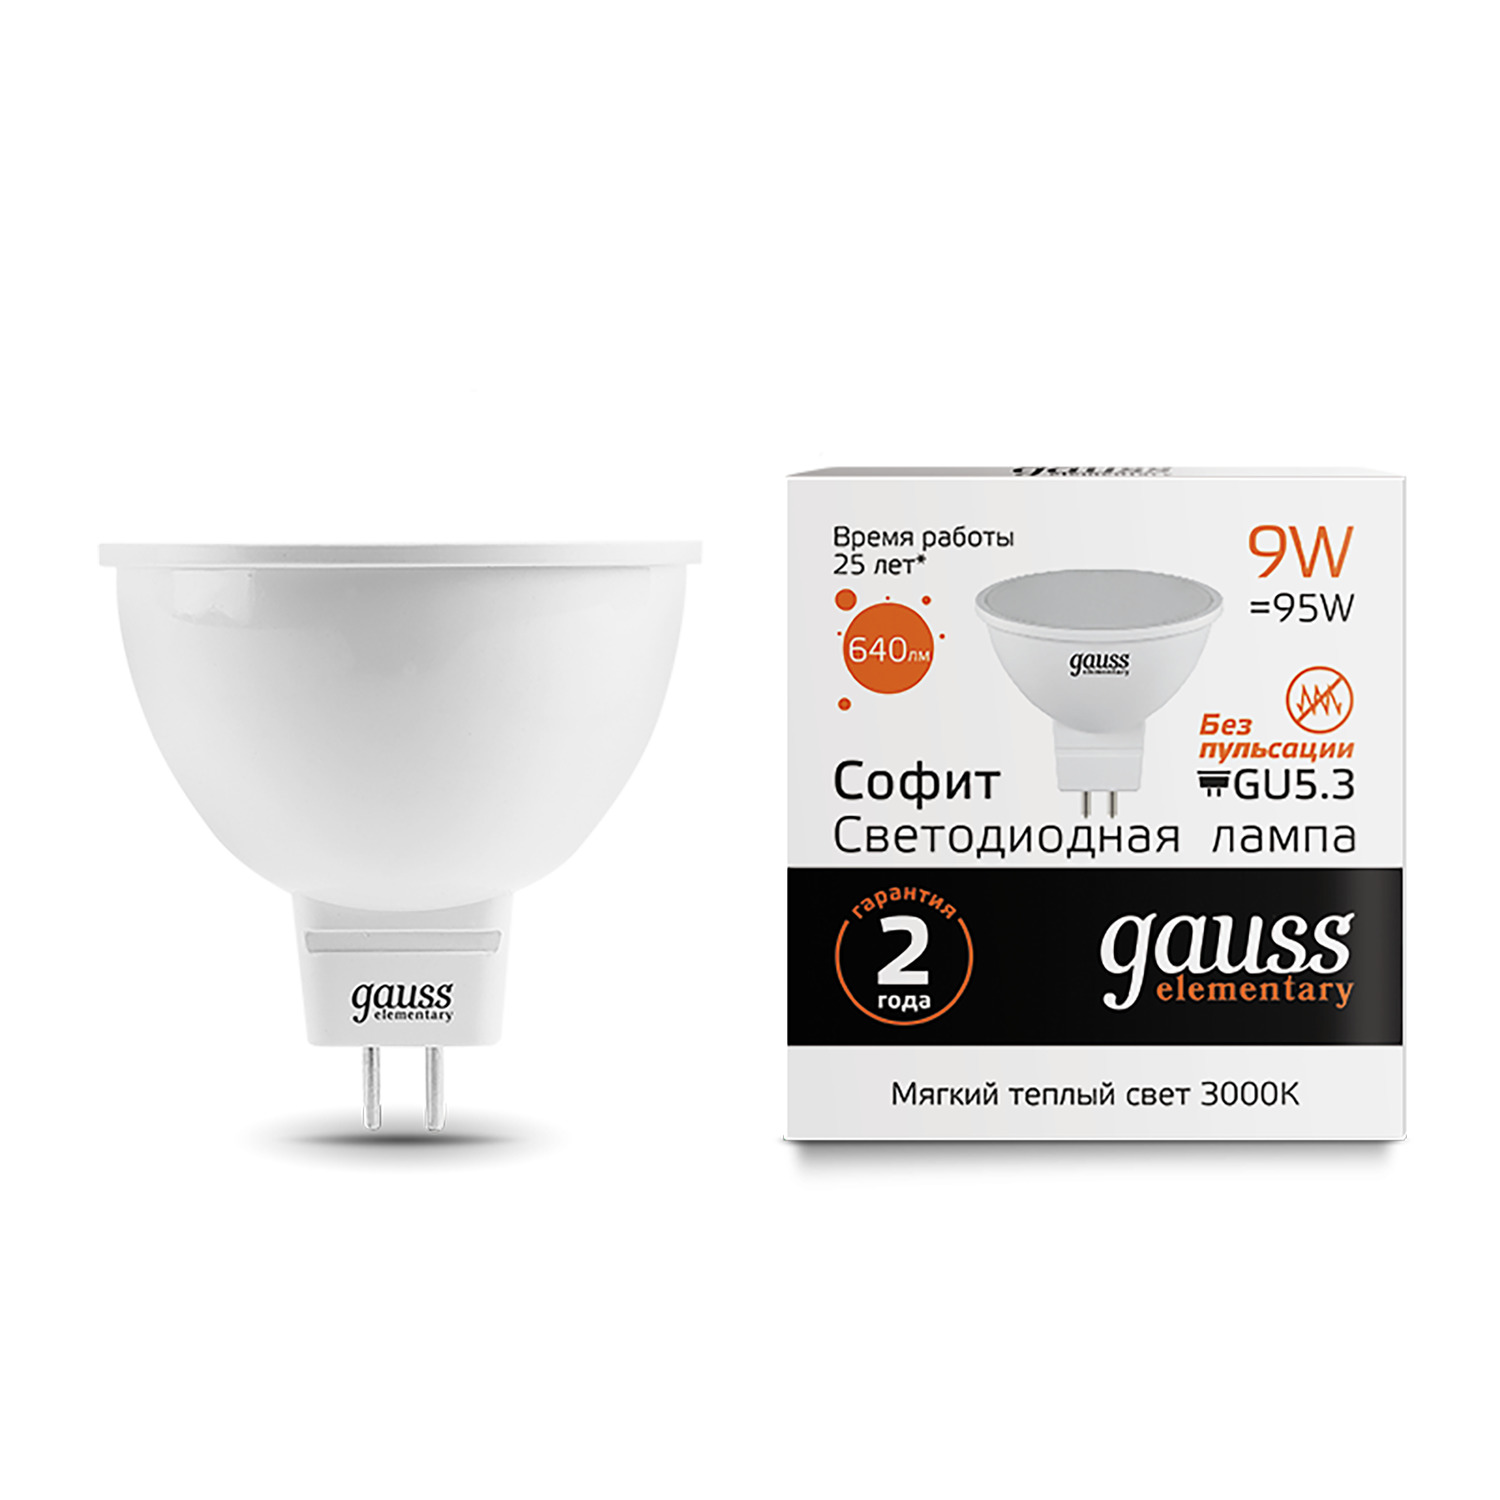 Лампа Gauss LED Elementary MR16 GU5.3 9W 3000K gauss led elementary candle 6w e14 3000k 1 10 100